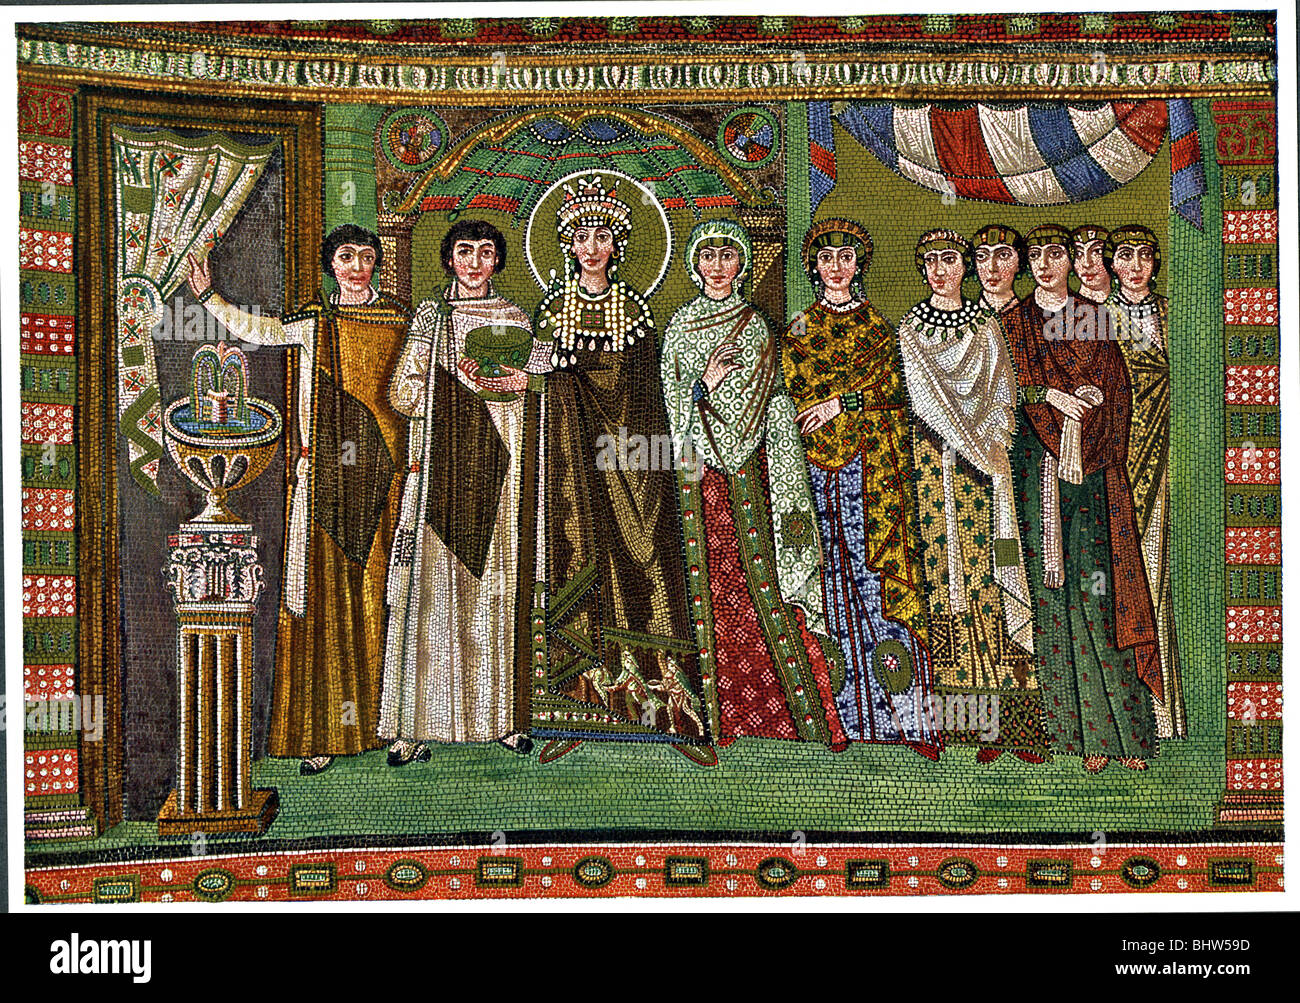 Fliesen-Mosaik in San Vitale in Ravenna zeigt Theodora (Dritter von links), Ehefrau des byzantinischen Kaisers Justinian und Begleiter. Stockfoto